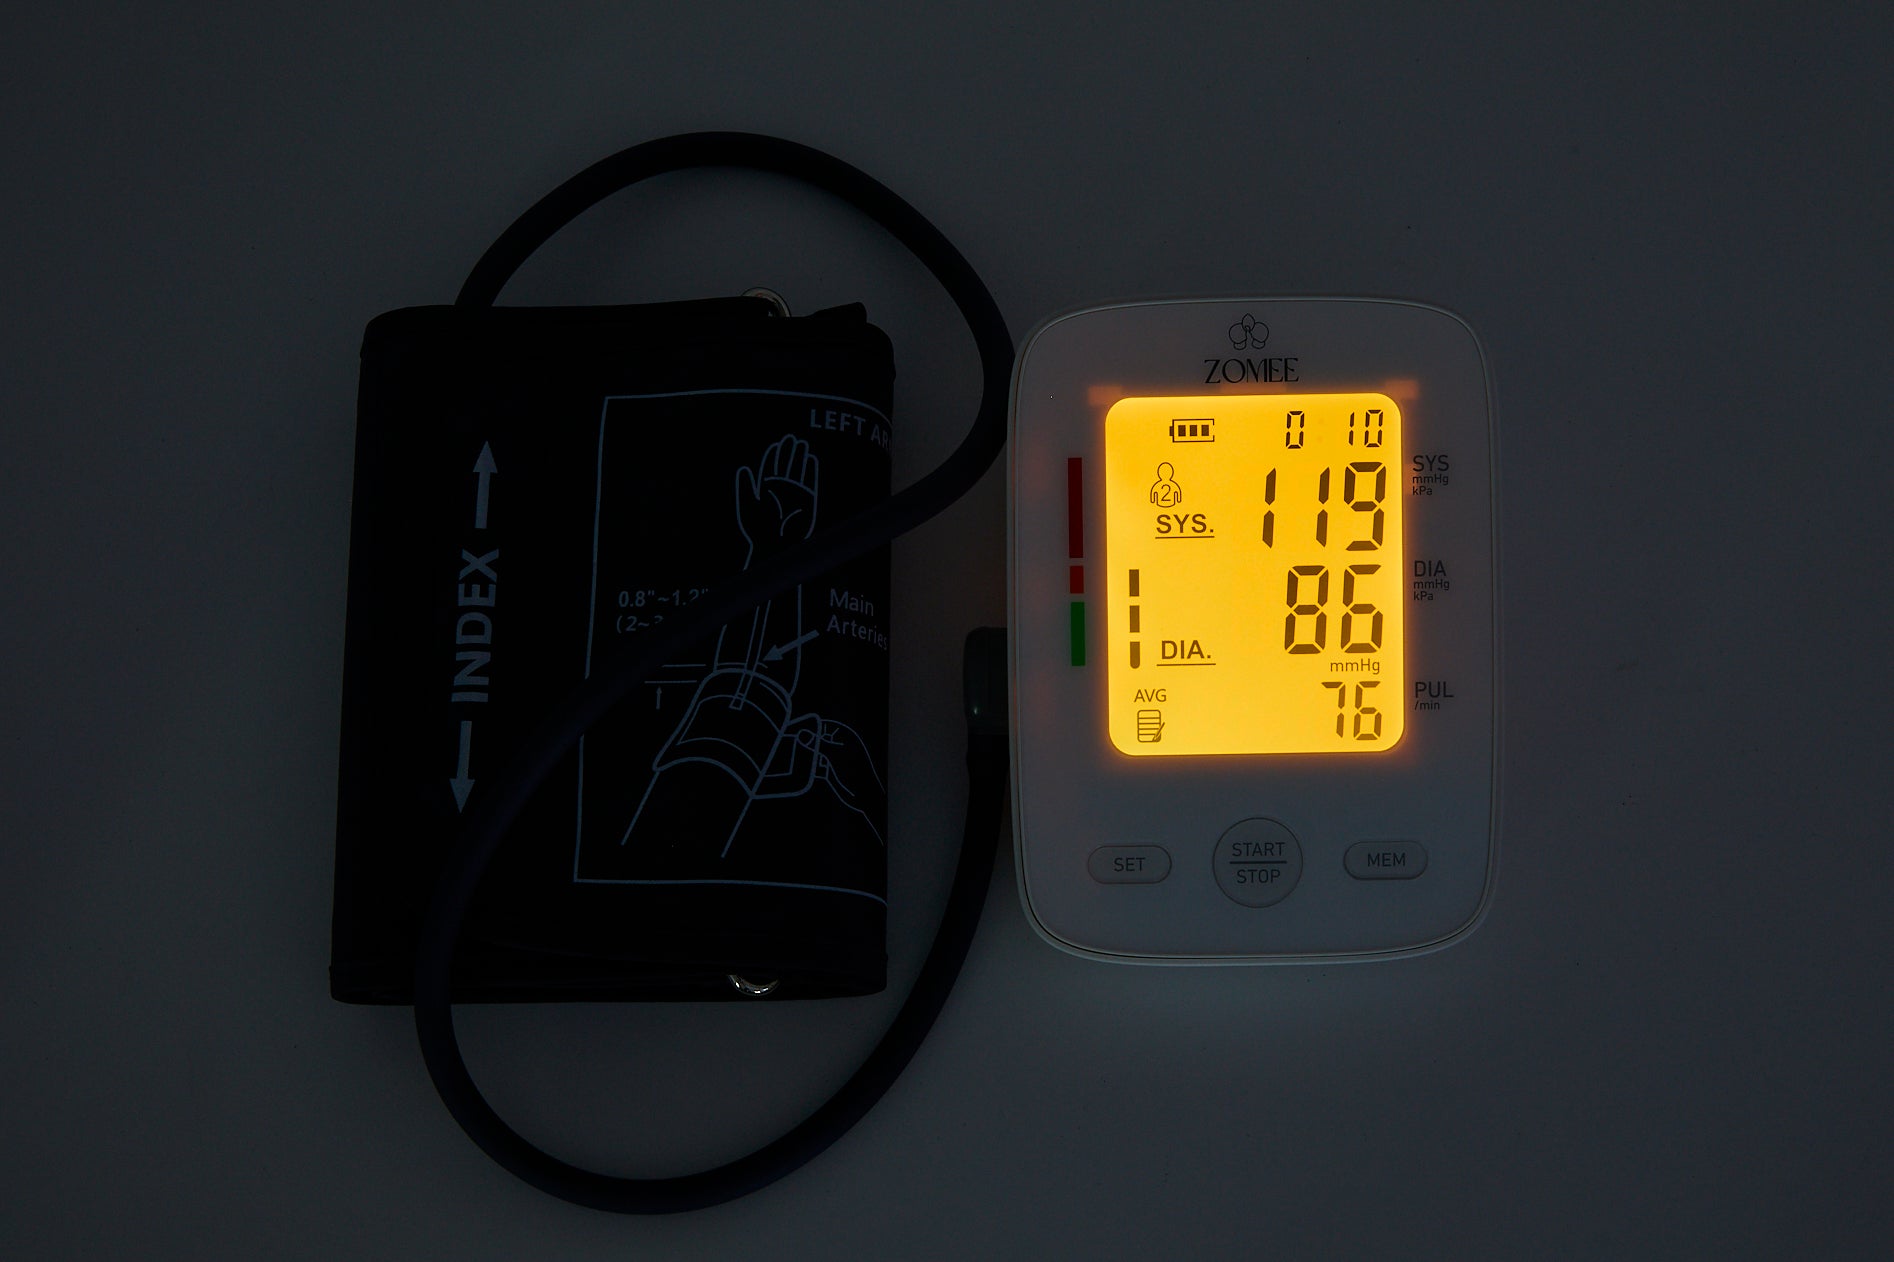 جهاز قياس ضغط الدم - مضخات الثدي Zomee